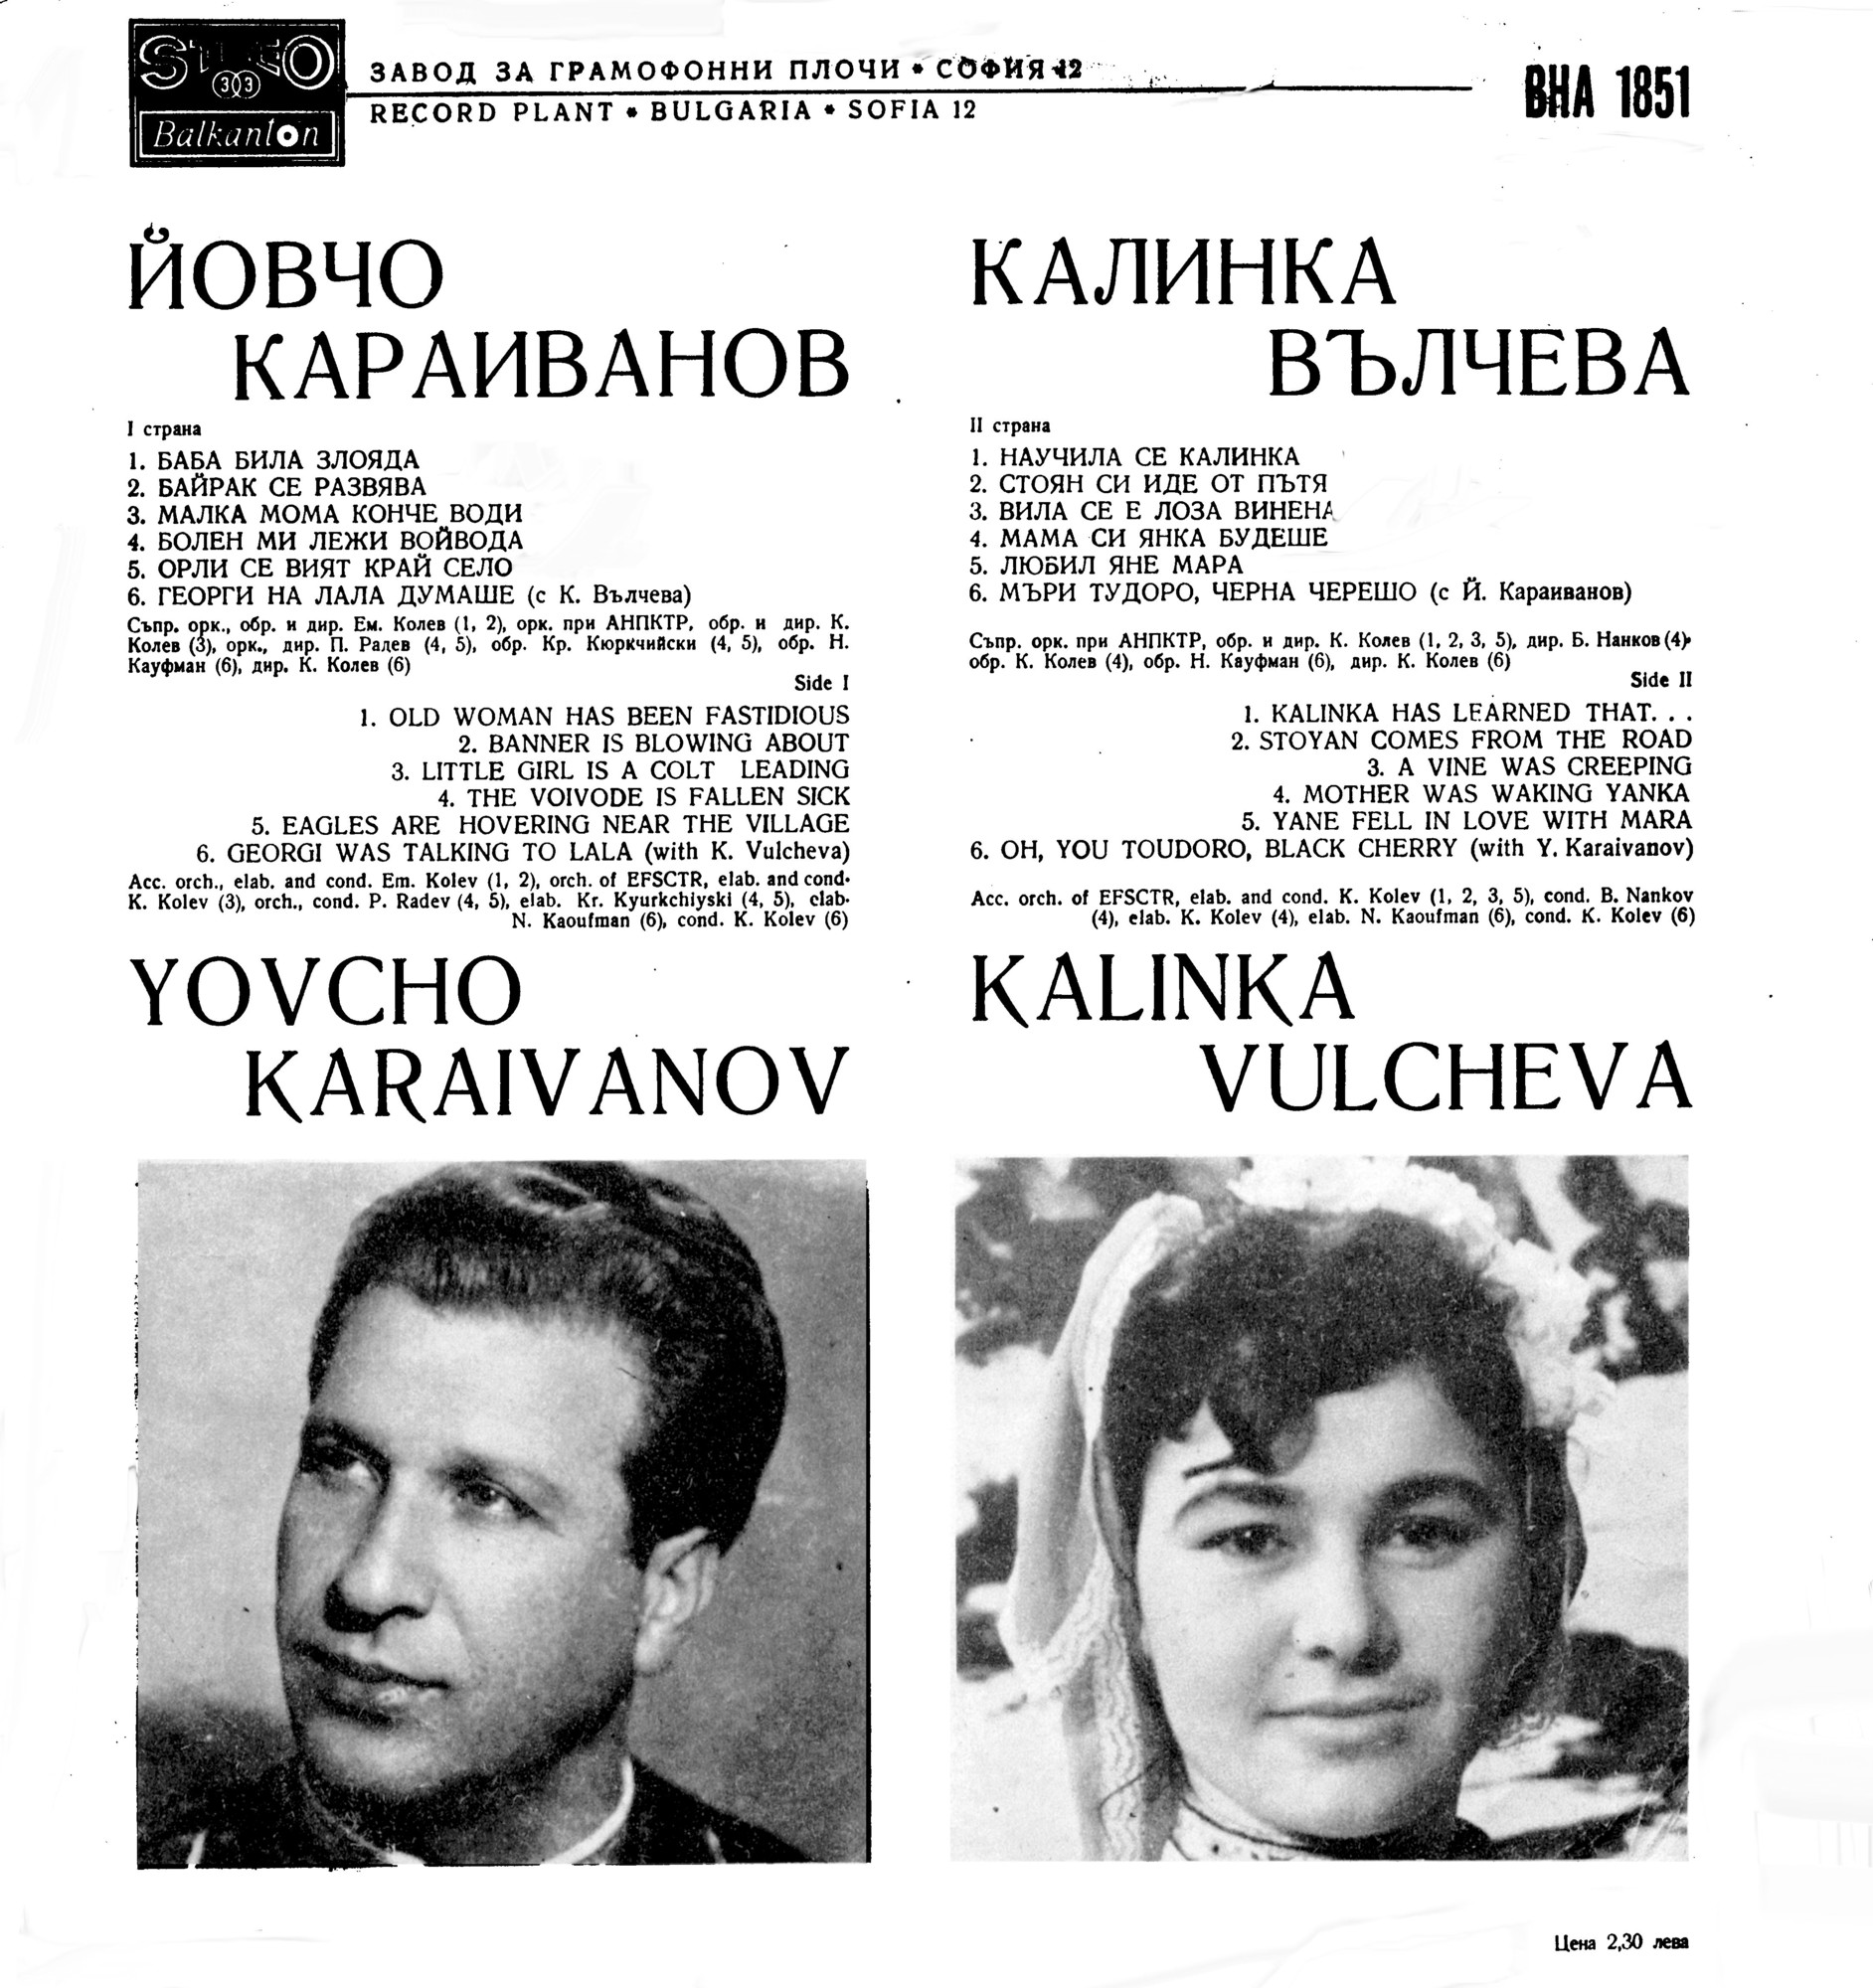 Изпълнения на Йовчо Караиванов и Калинка Вълчева